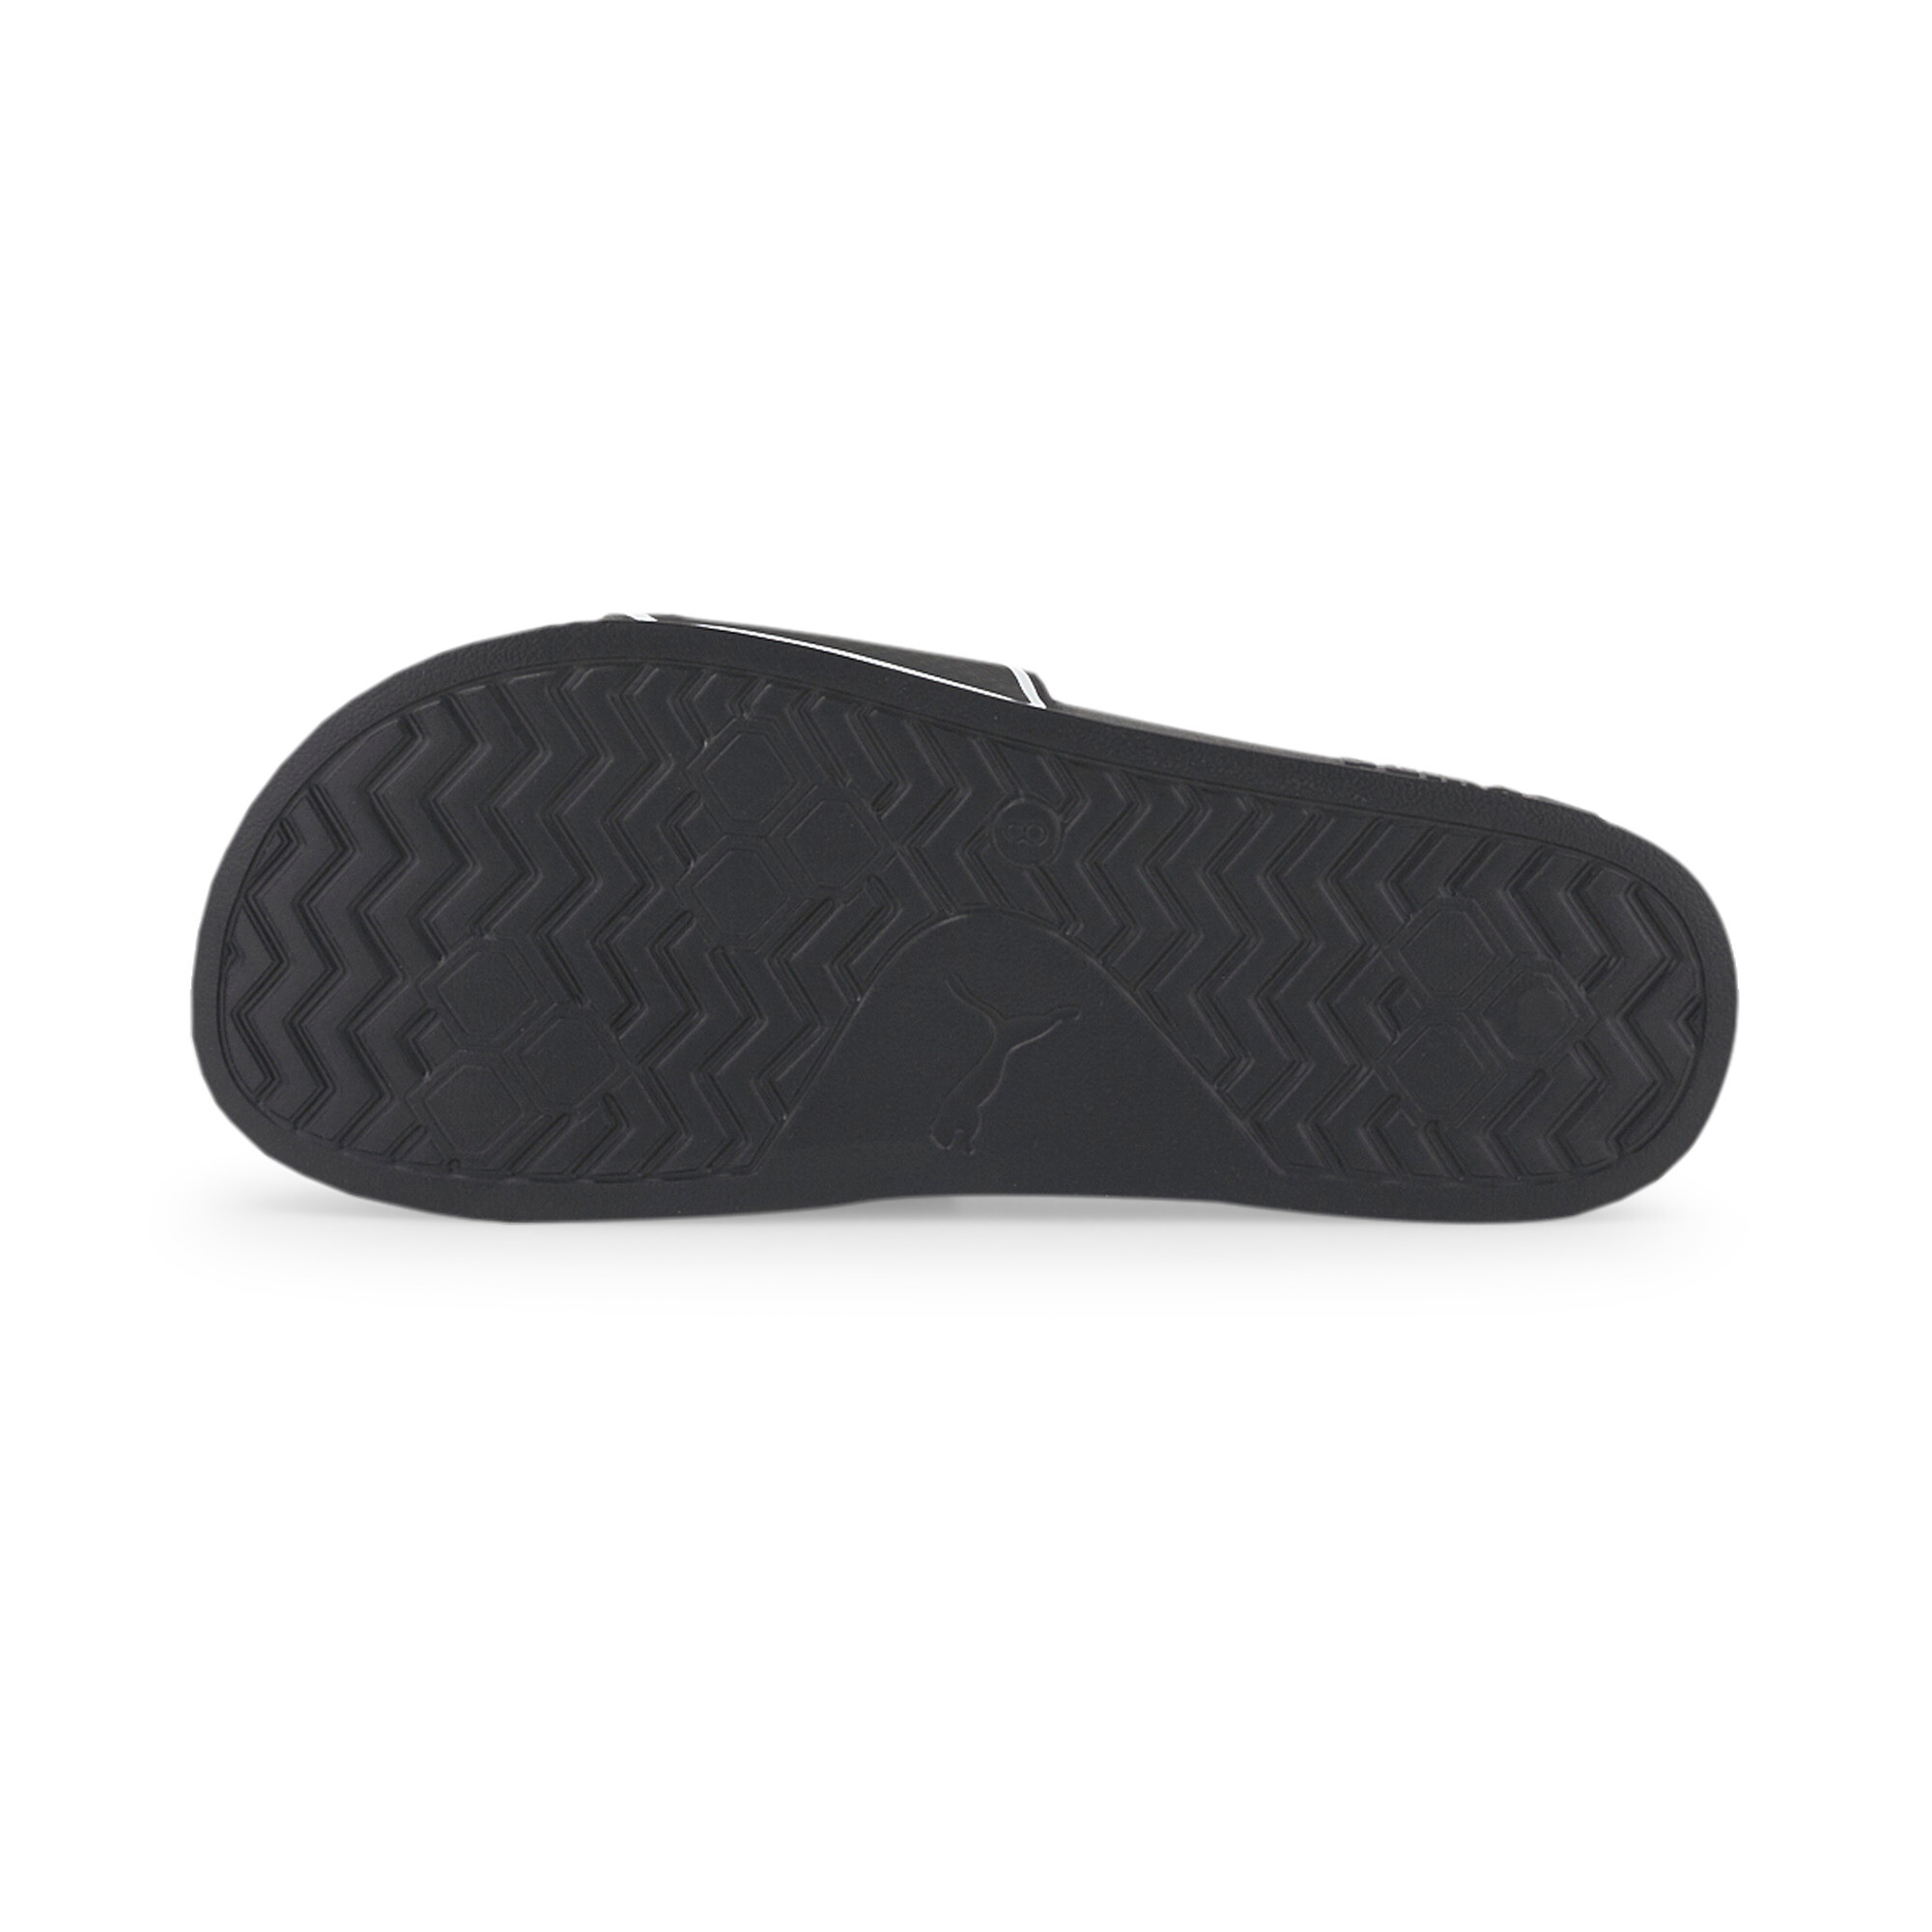 Men's PUMA Leadcat 2.0 Sandals In Black, Size EU 40.5